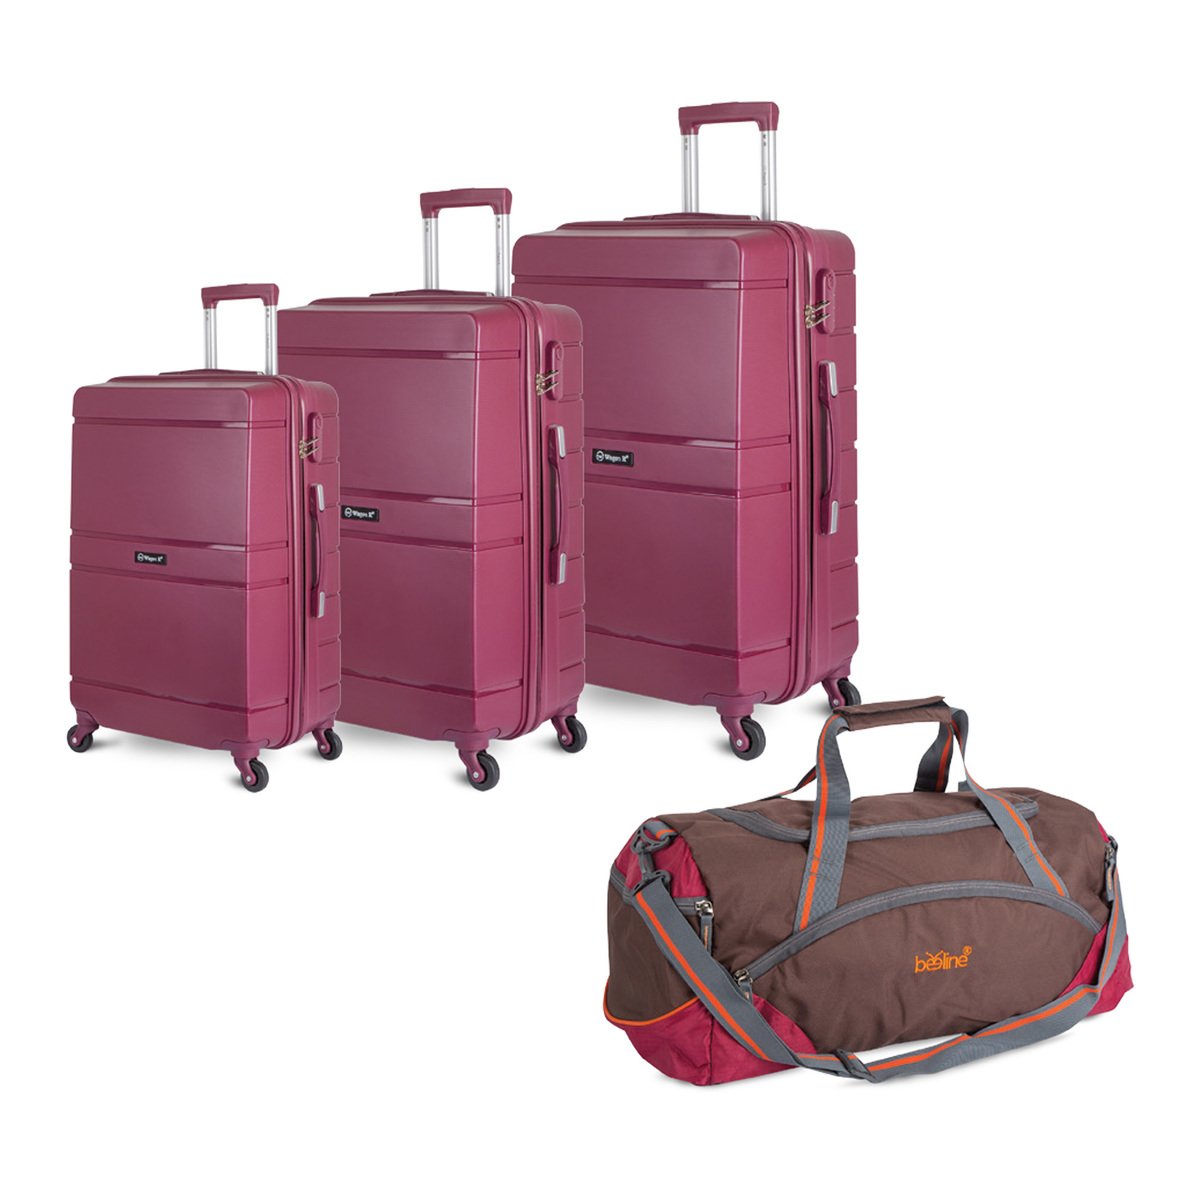 Best Travel Bags Luggage Bags - Trolley Bags At LuLu hypermarket